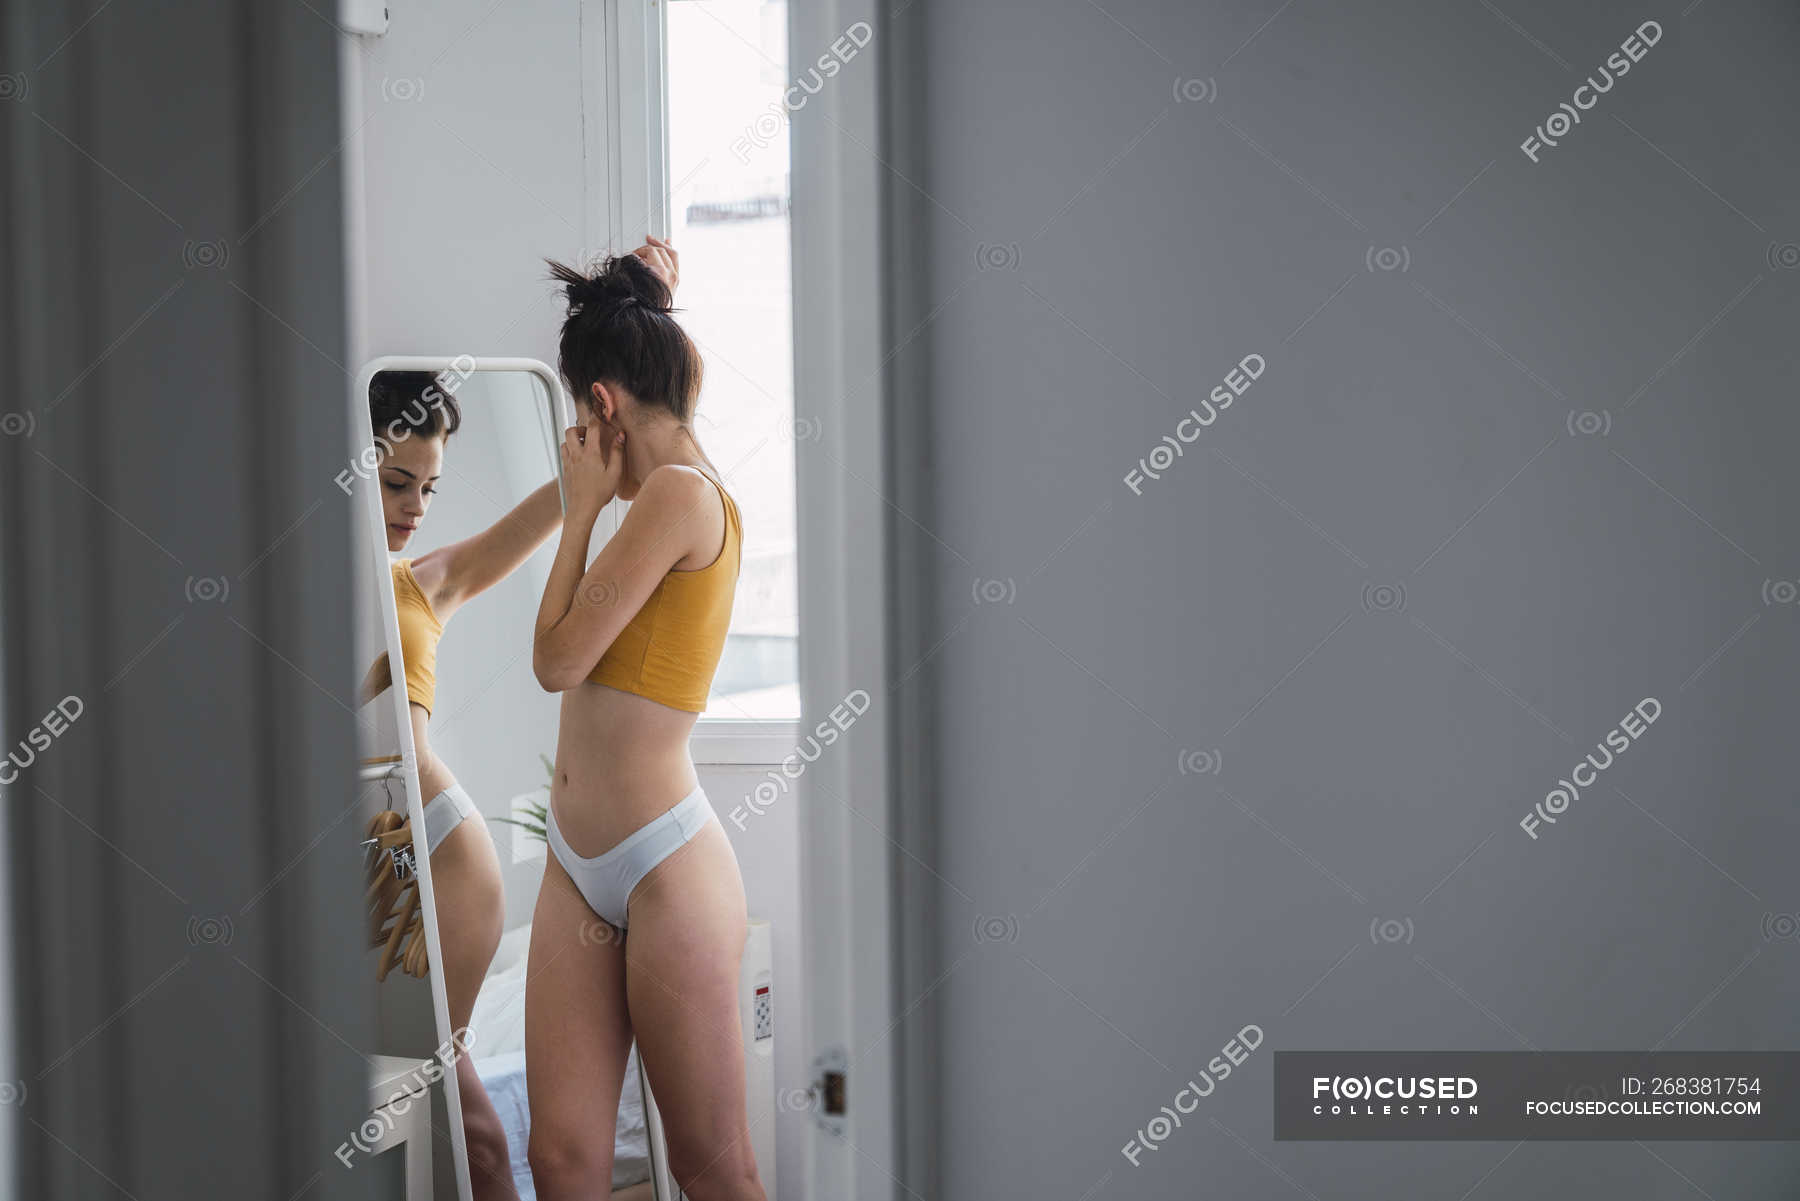 Mujer joven en ropa interior en casa el espejo — erotismo, - Stock Photo | #268381754